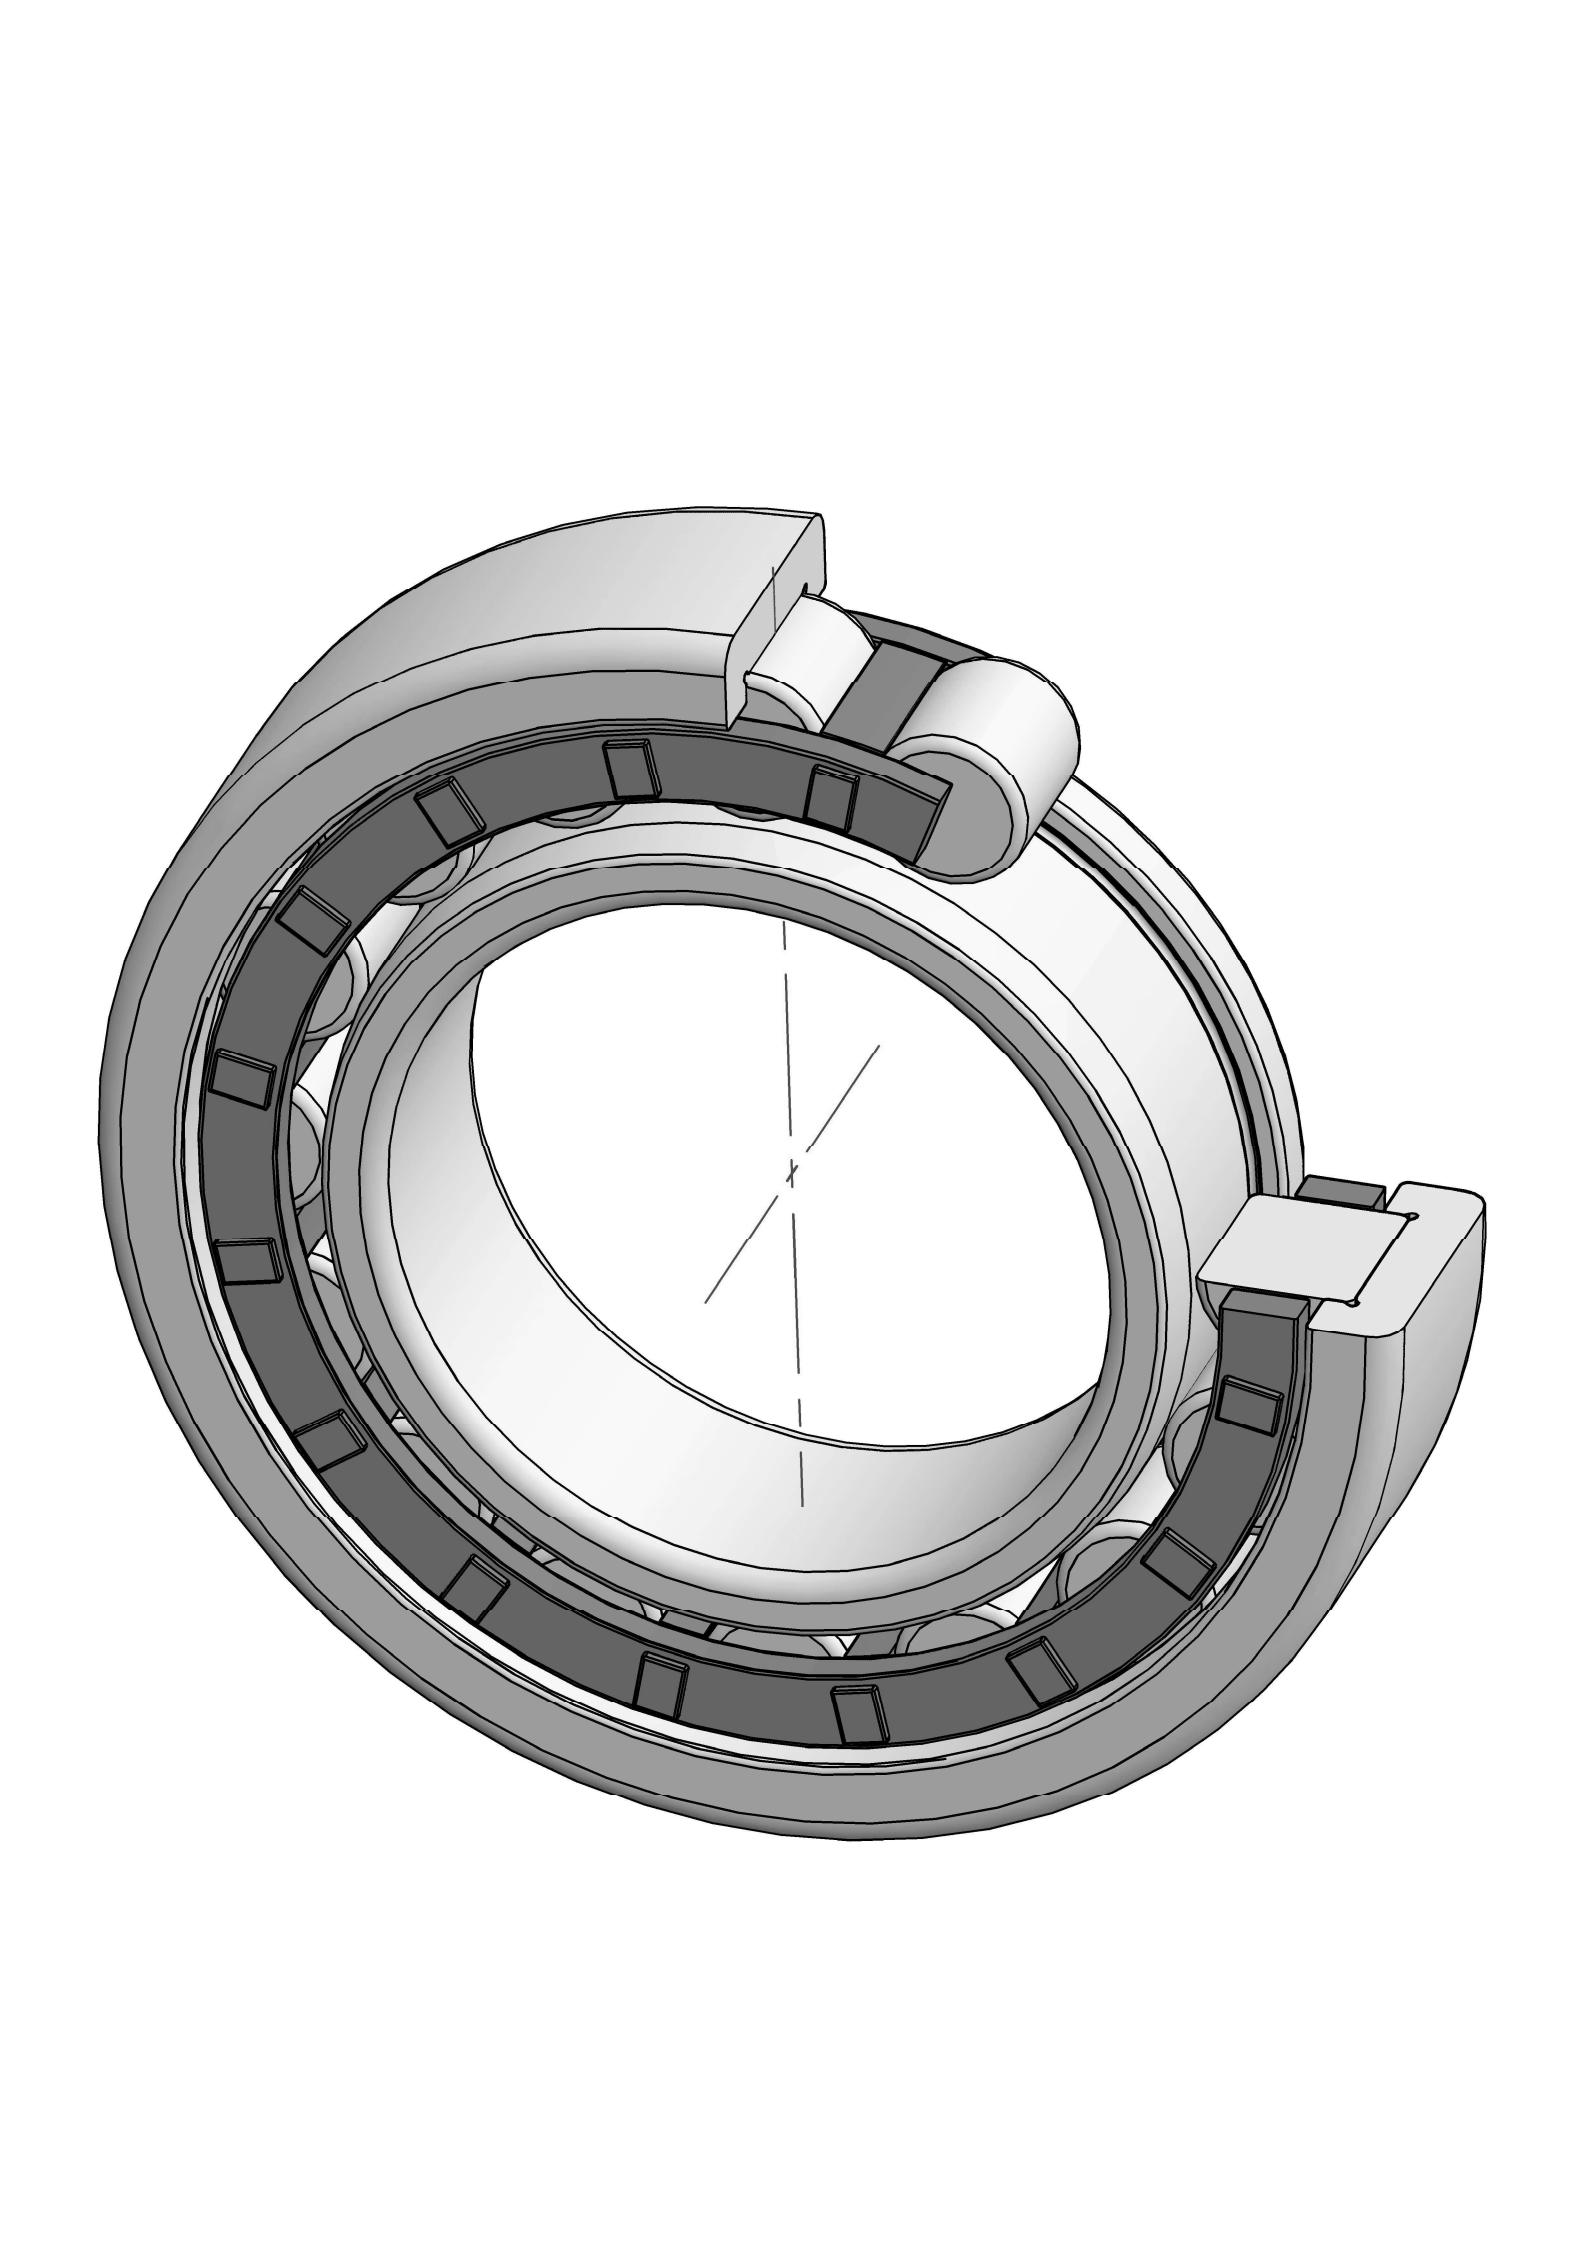 NJ2218-EM otu ahịrị cylindrical roller bearing